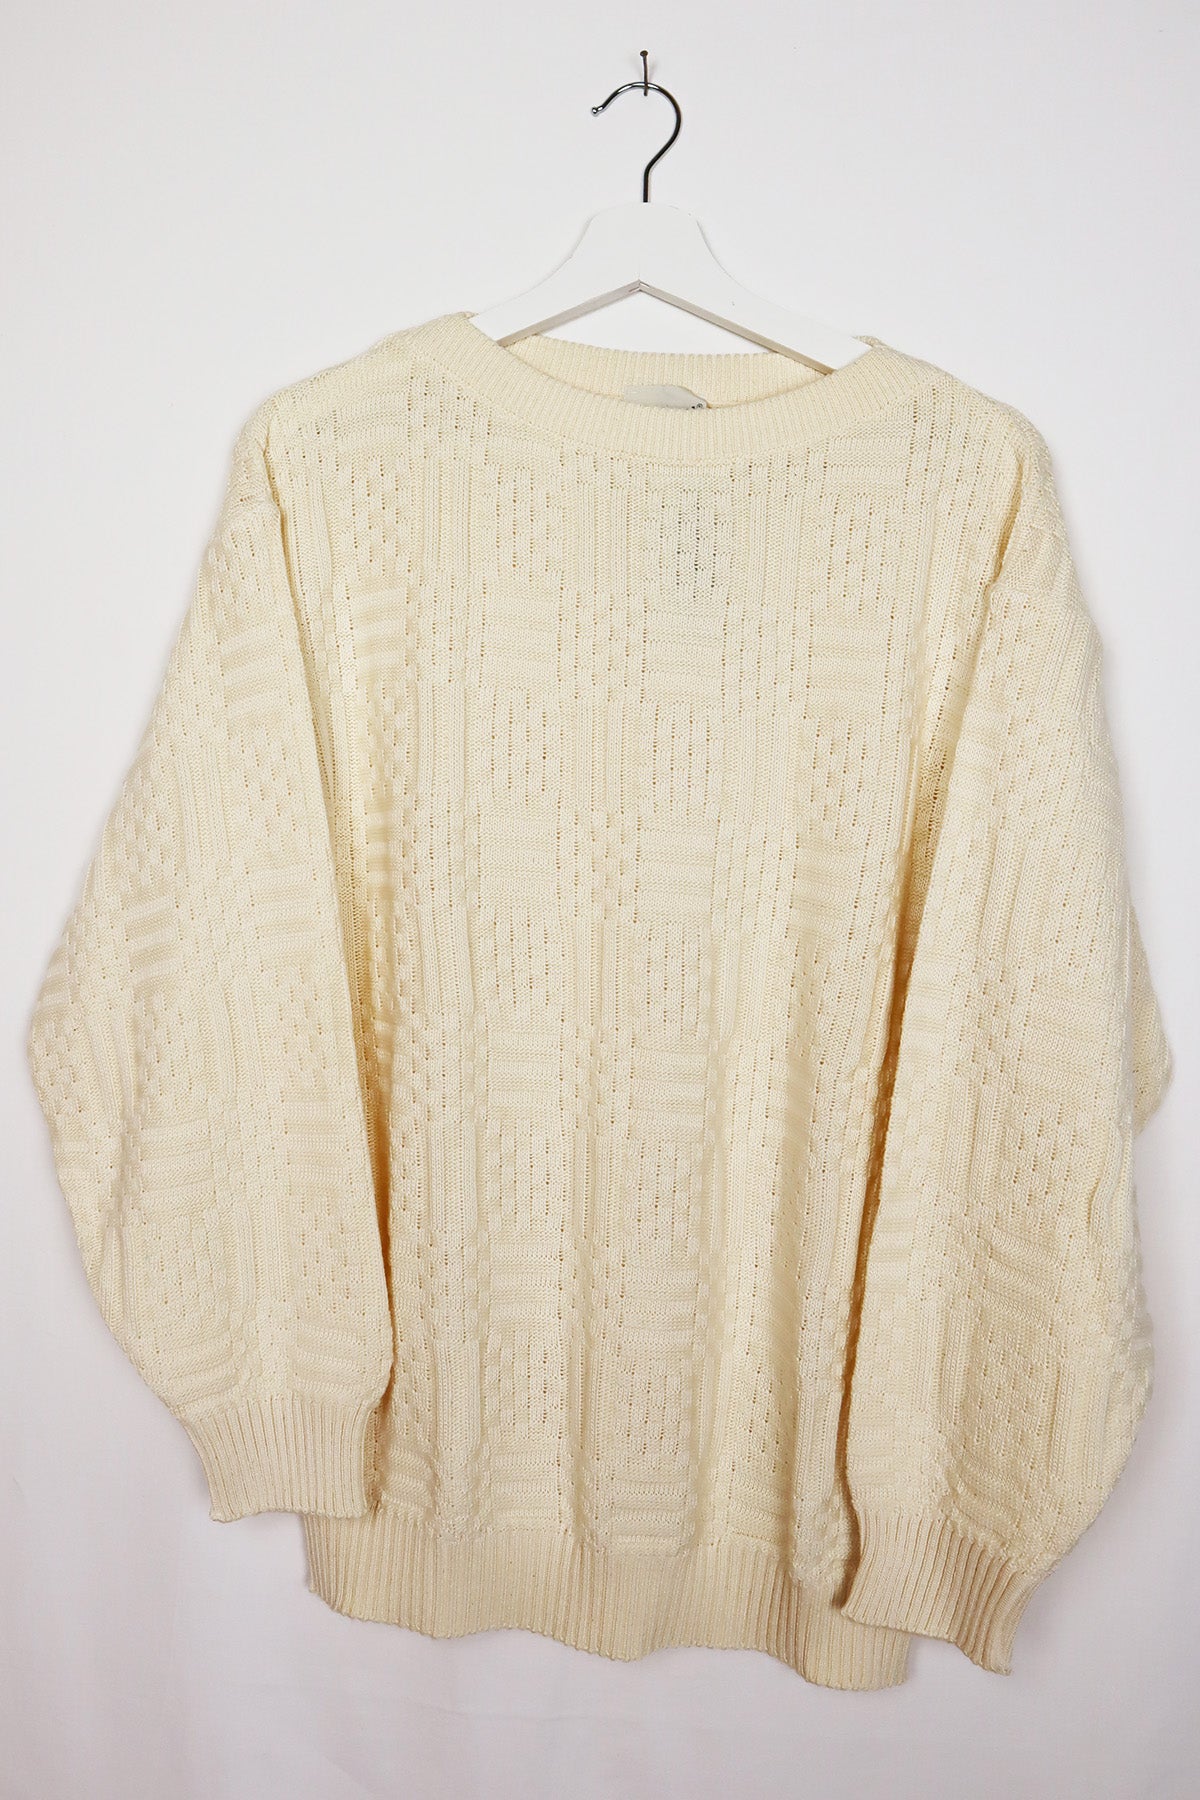 Unisex Vintage Pullover Natur-Weiß ( Gr.M )